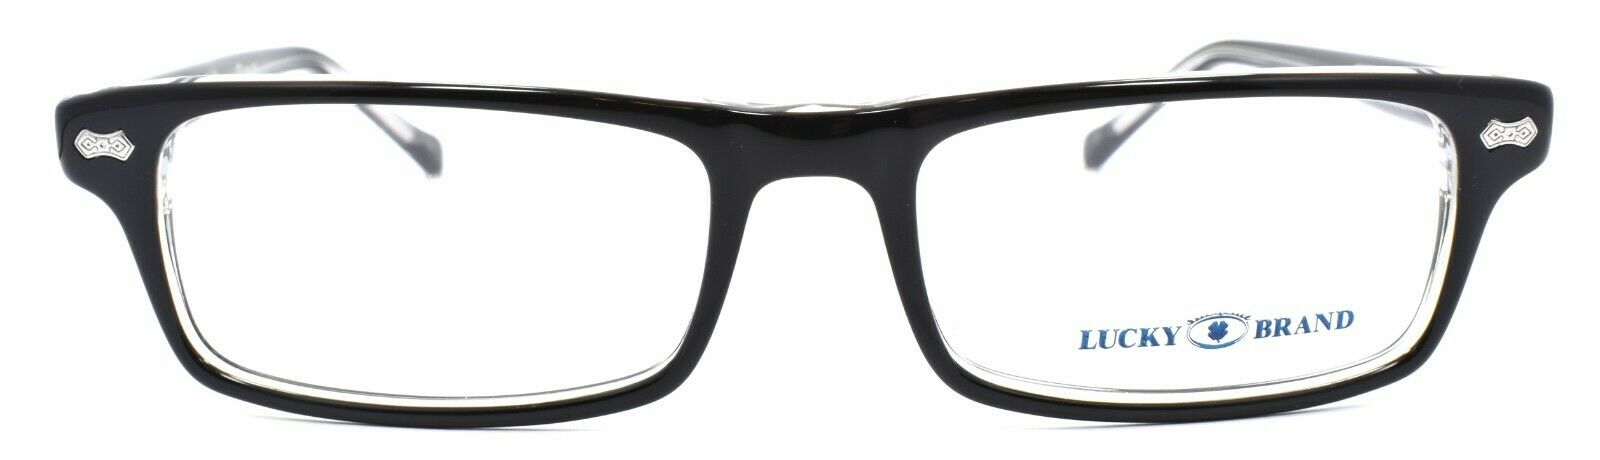 2-LUCKY BRAND Jacob Kids Boys Eyeglasses Frames 47-15-130 Black / Crystal + CASE-751286136203-IKSpecs